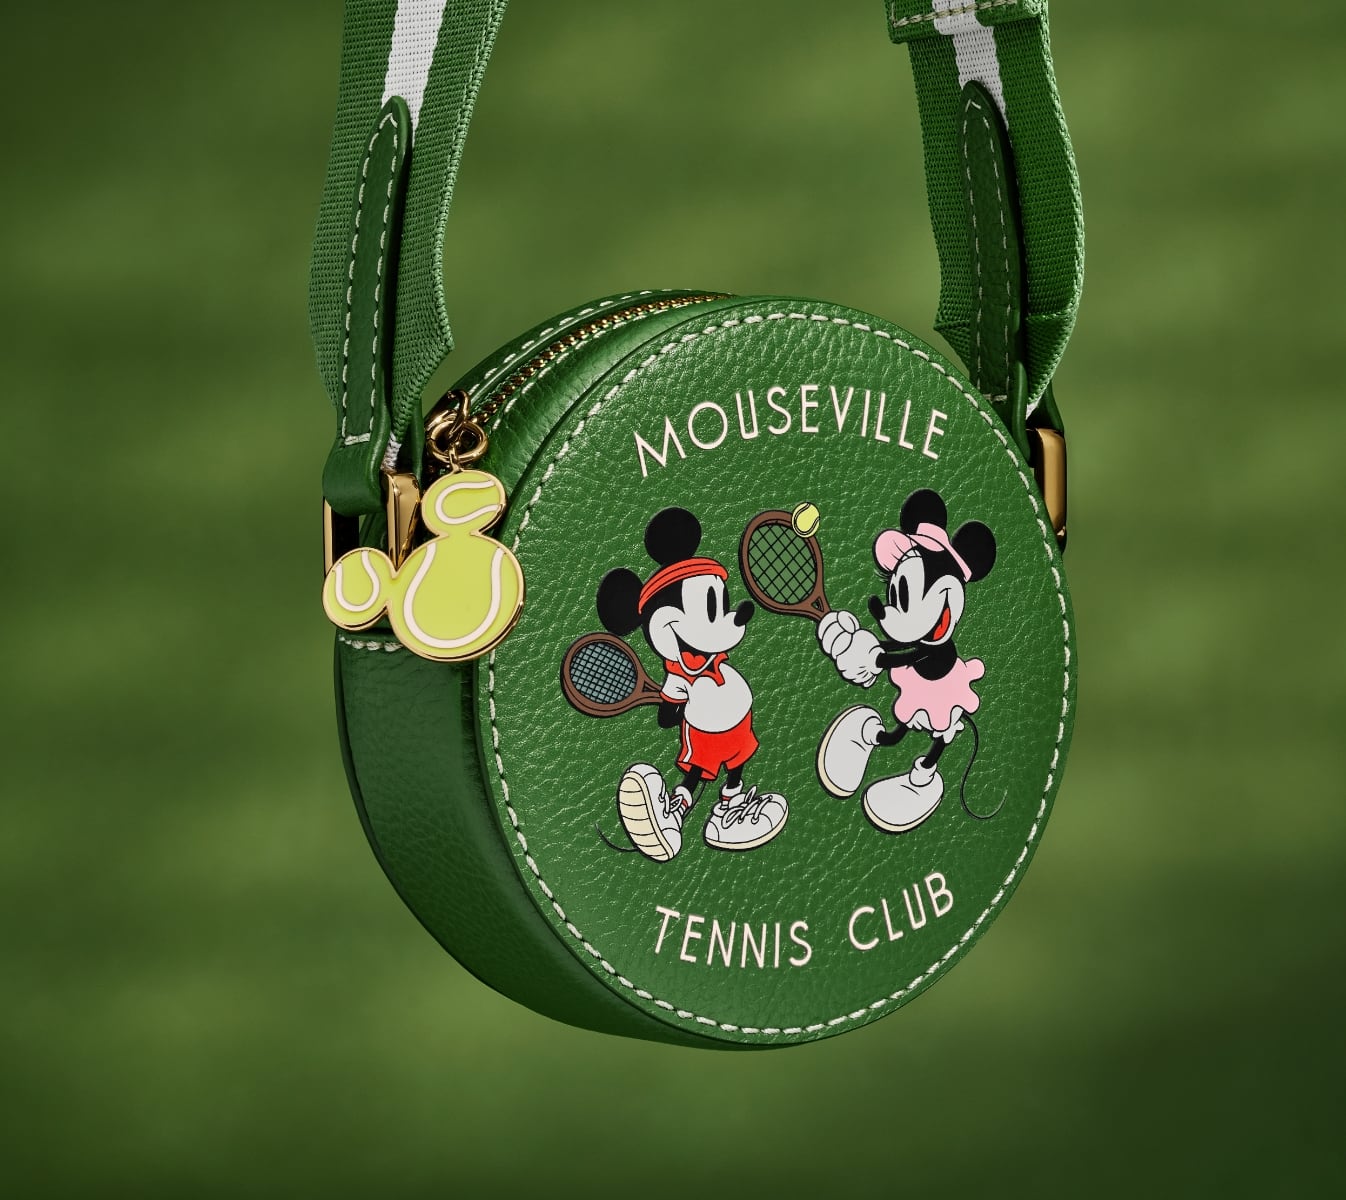 Un gros plan de notre mini sac porté croisé en édition spéciale, une silhouette ronde en cuir vert avec une sérigraphie représentant Mickey et Minnie jouant au tennis.